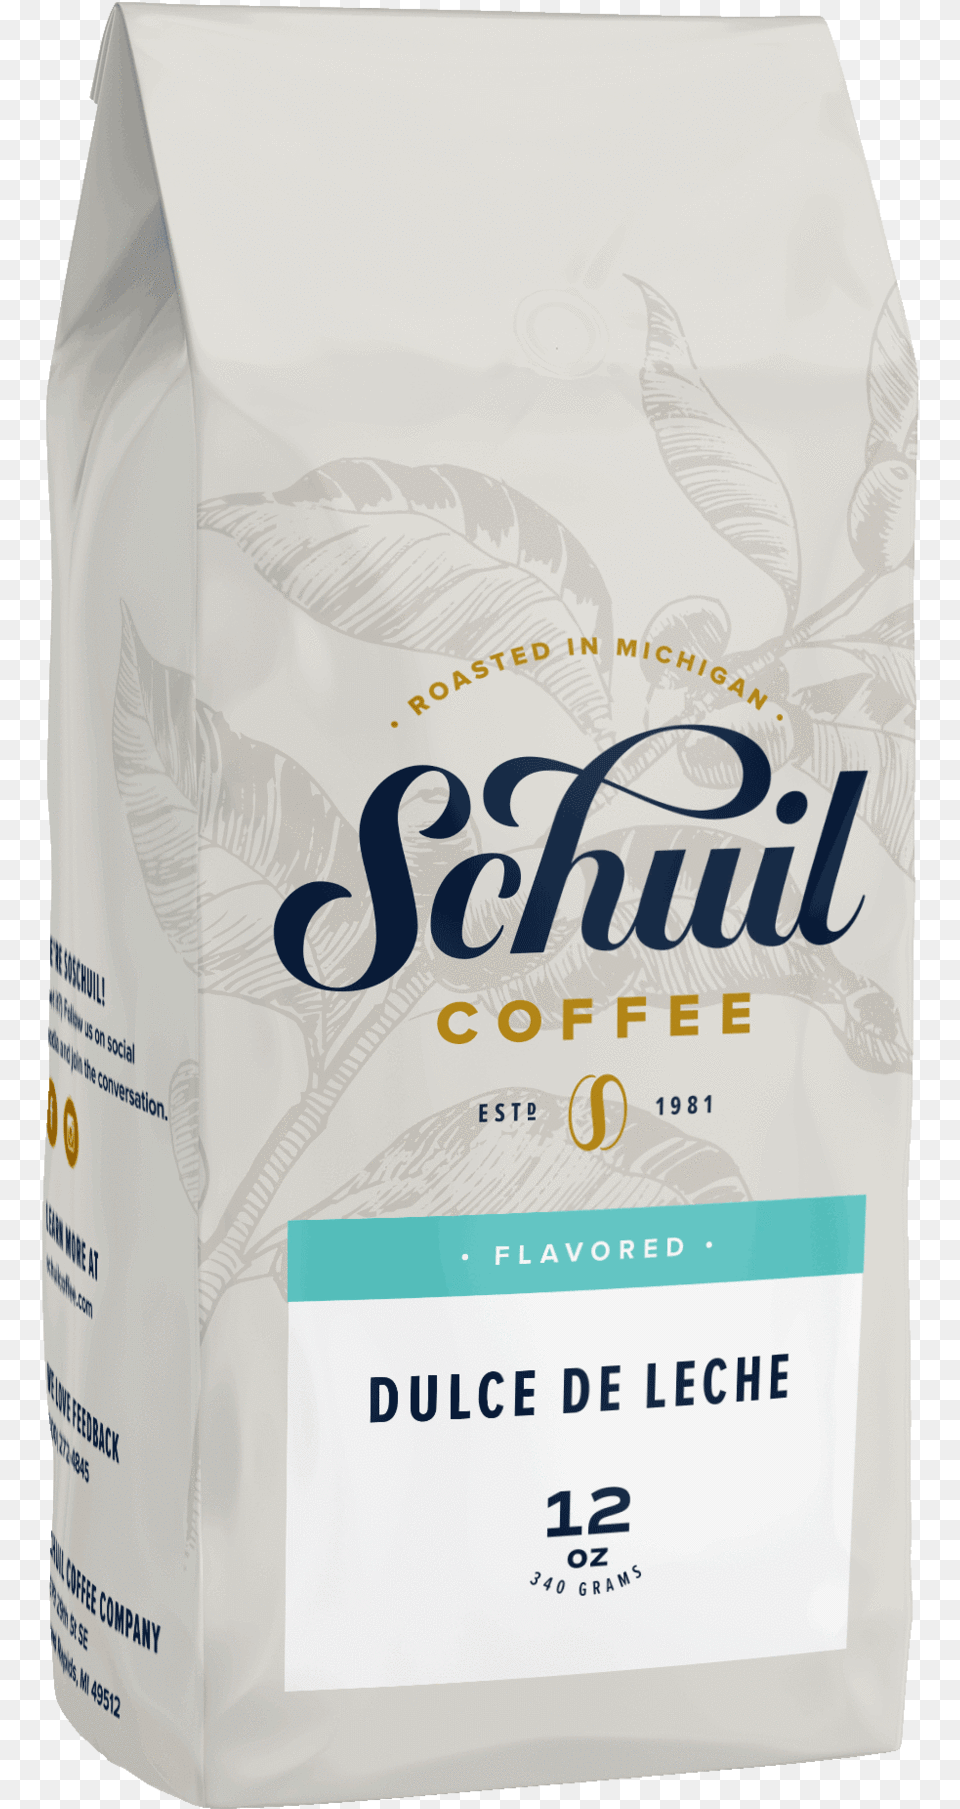 Dulce De Leche Schuil Coffee, Powder, Flour, Food Png